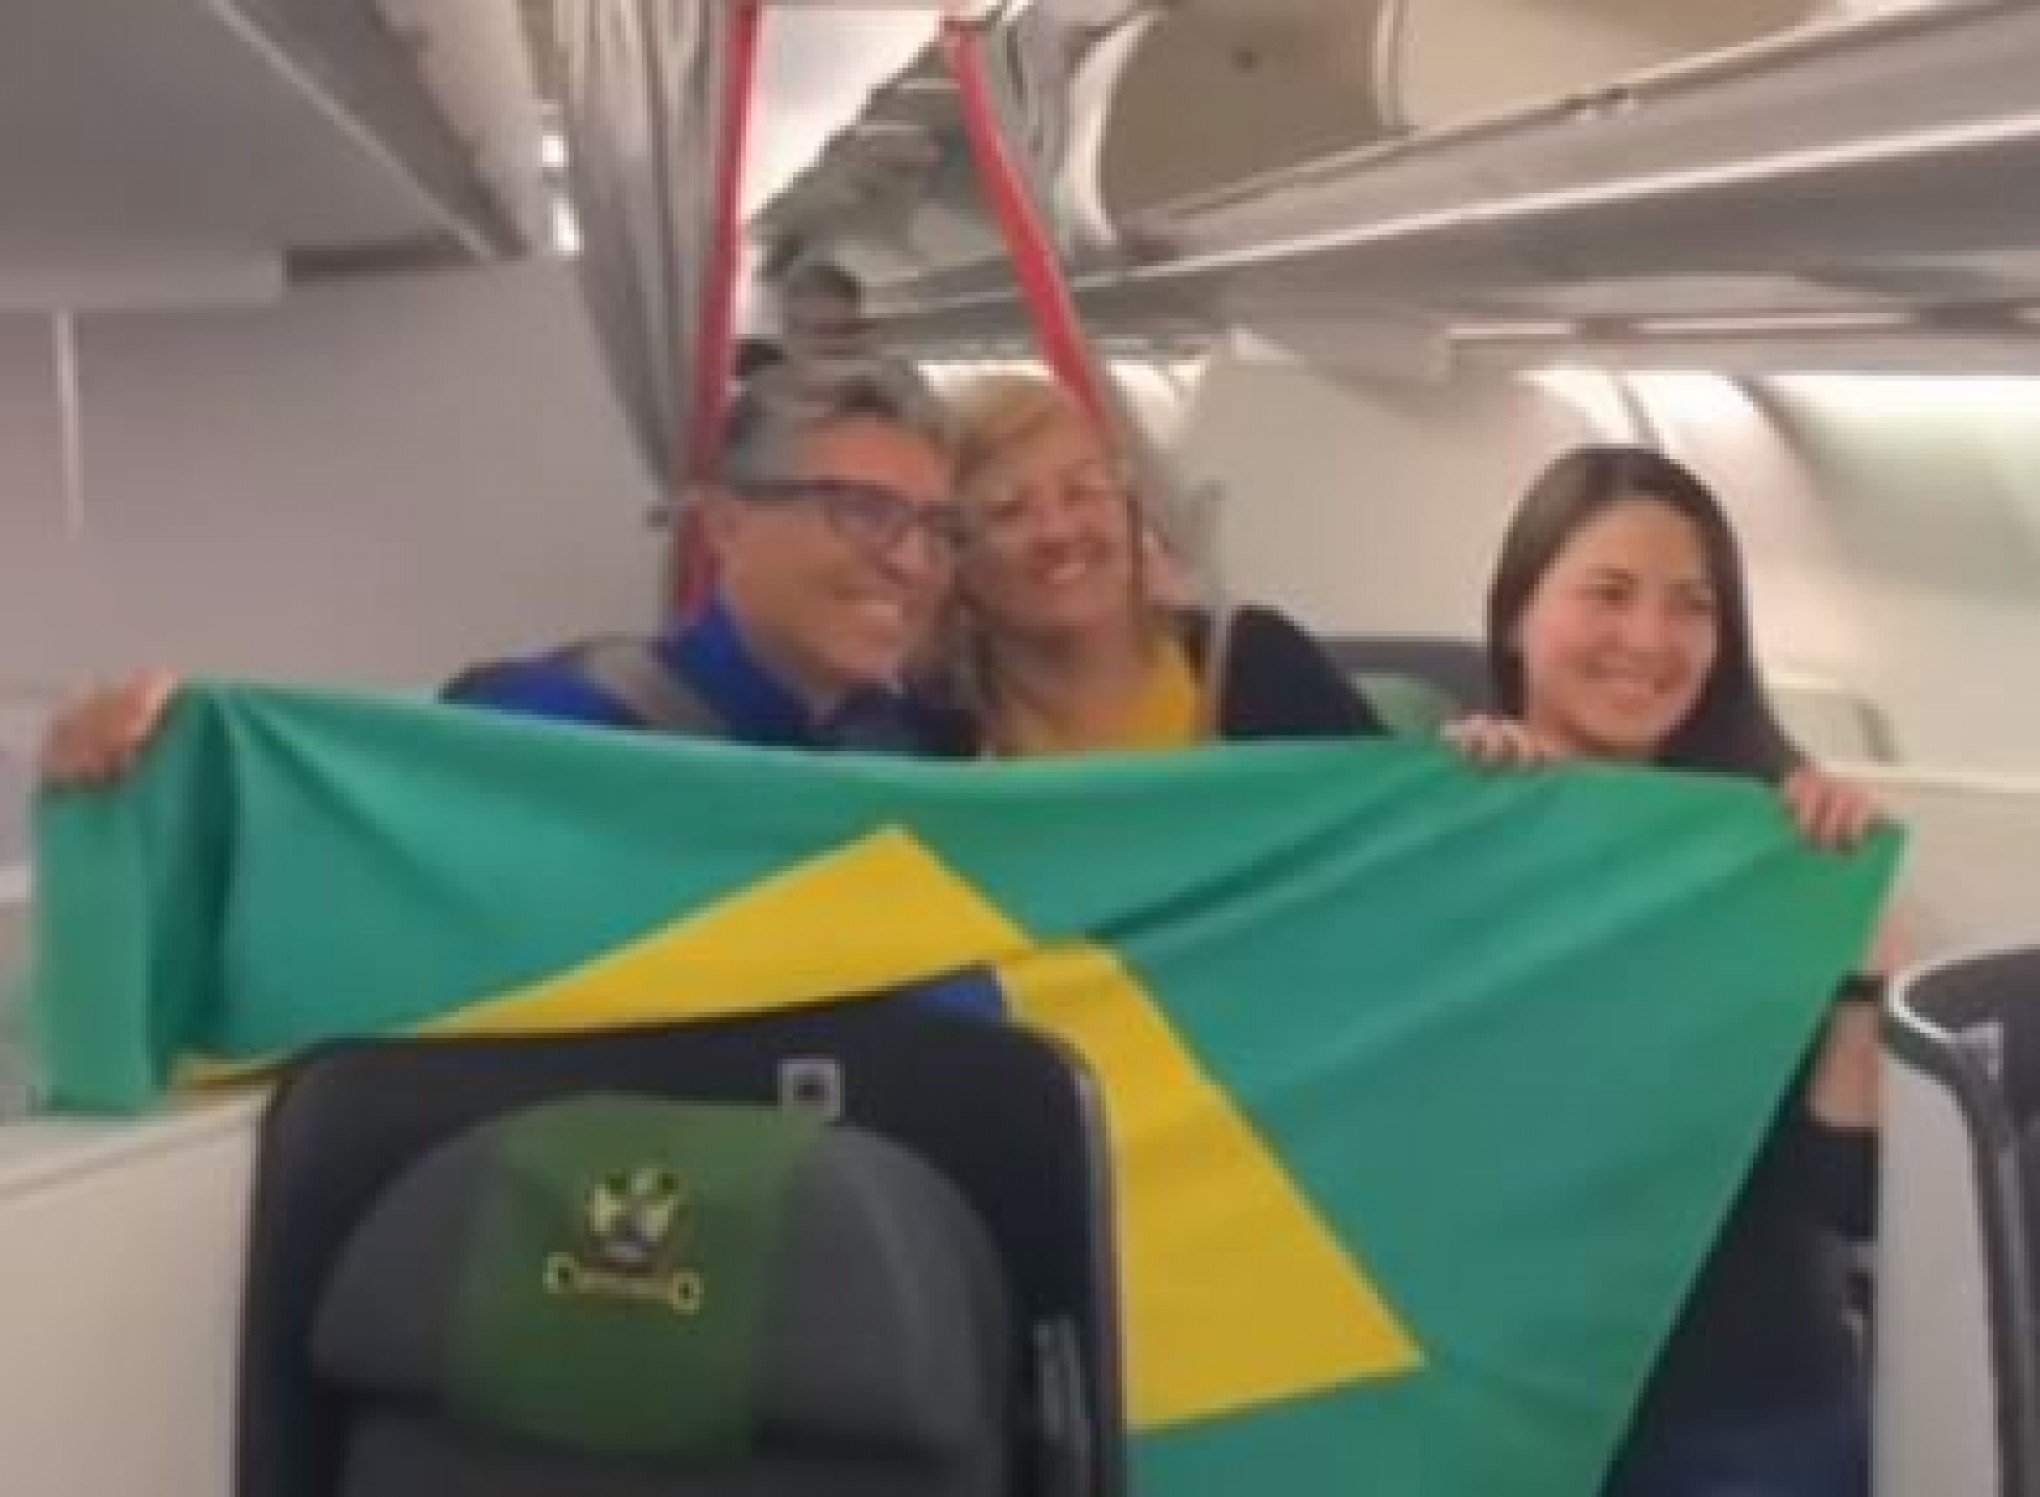 GUERRA ISRAEL-HAMAS: Mais um avião com brasileiros resgatados de Israel chega ao Brasil